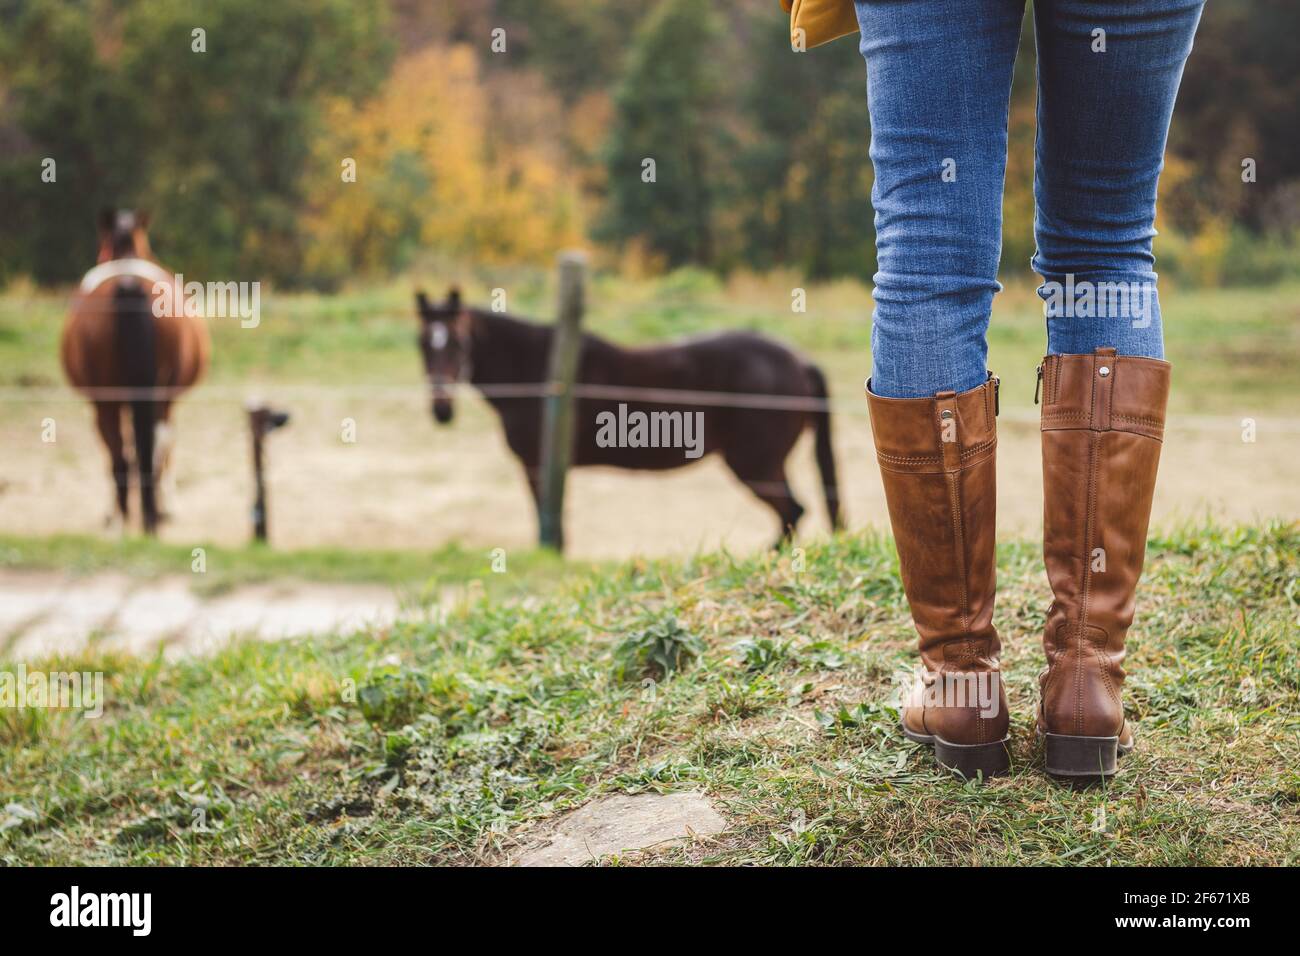 Listo para montar a caballo en paddock. La mujer que usa botas montar y jeans está de pie en el rancho. Actividades de ocio al aire libre Fotografía de stock -